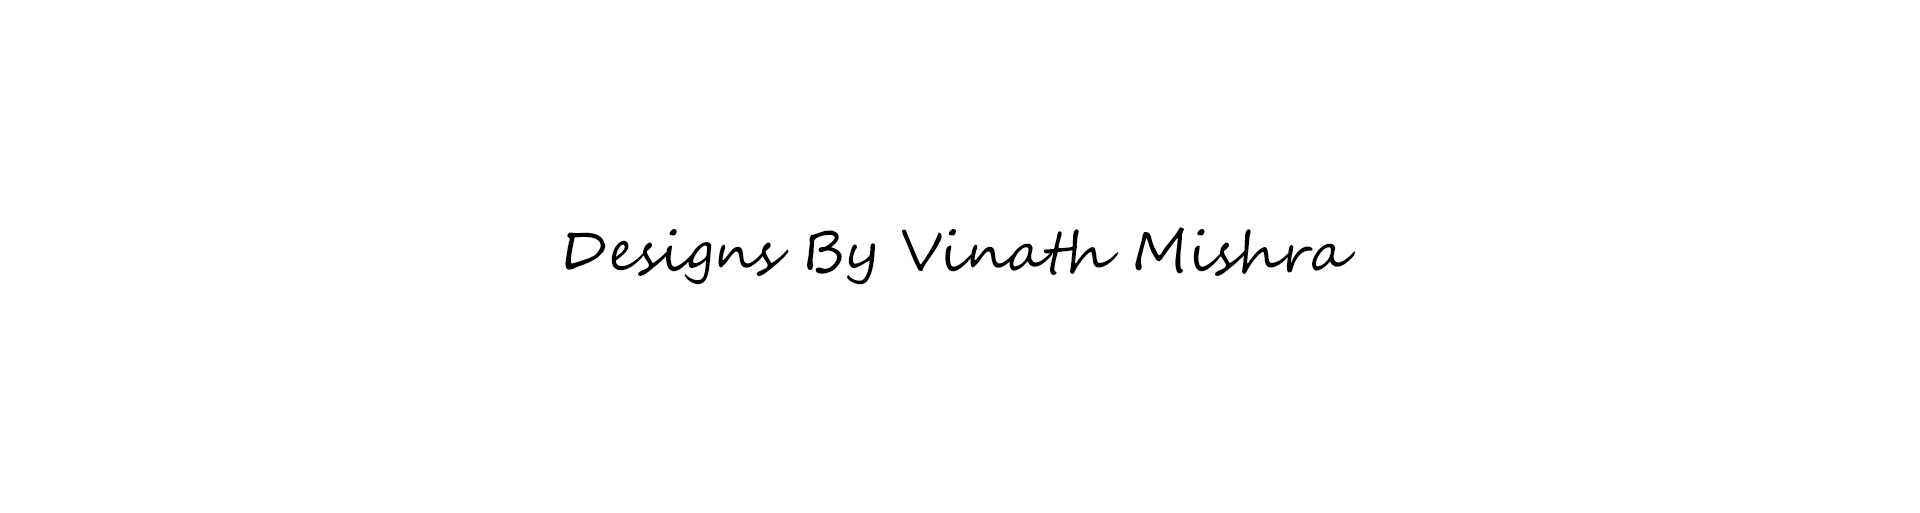 Vinath Mishra